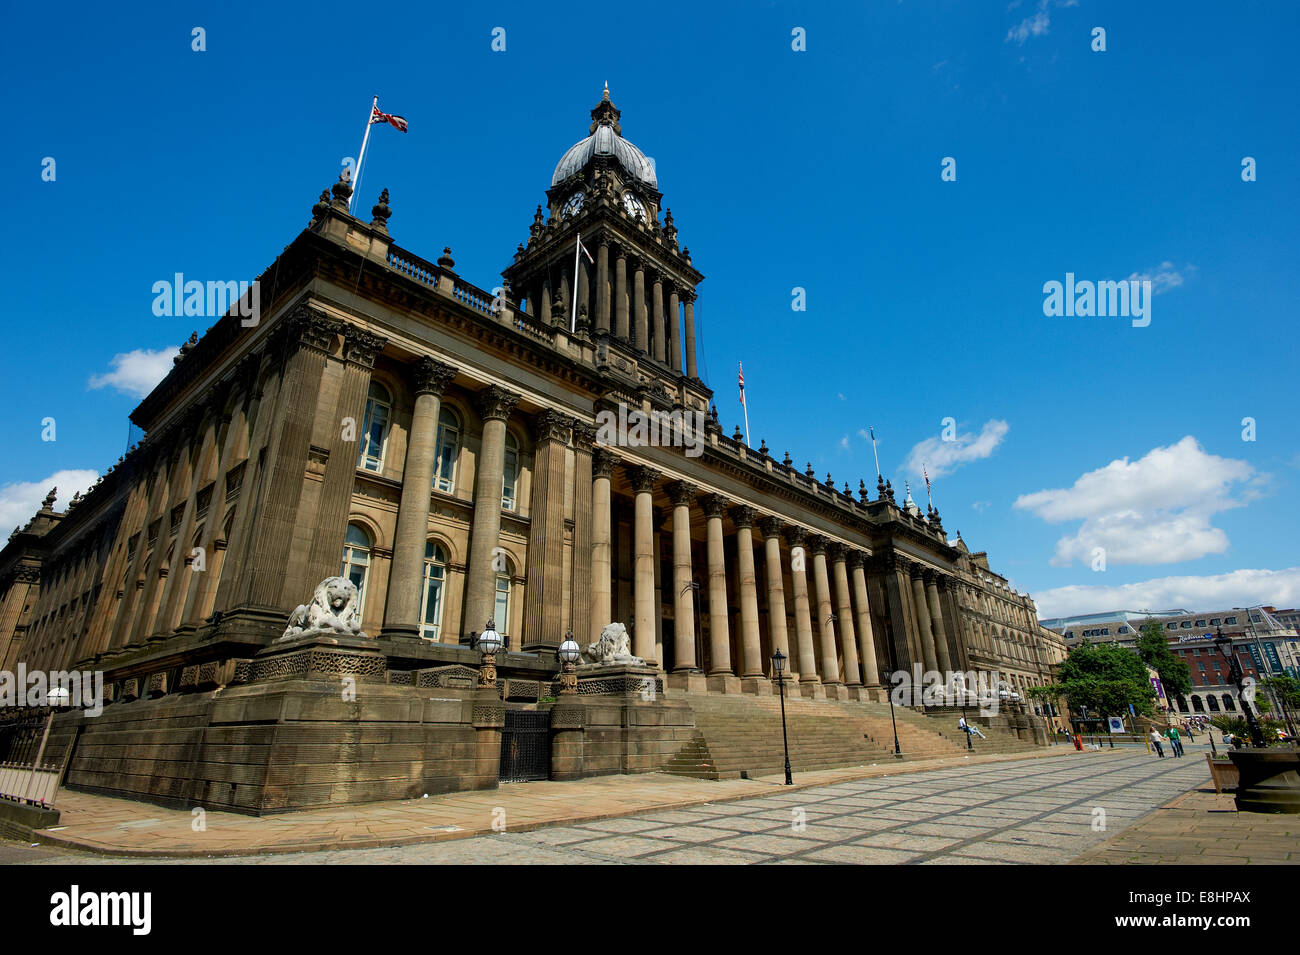 El Ayuntamiento de Leeds, Leeds, West Yorkshire, Reino Unido. Foto de stock